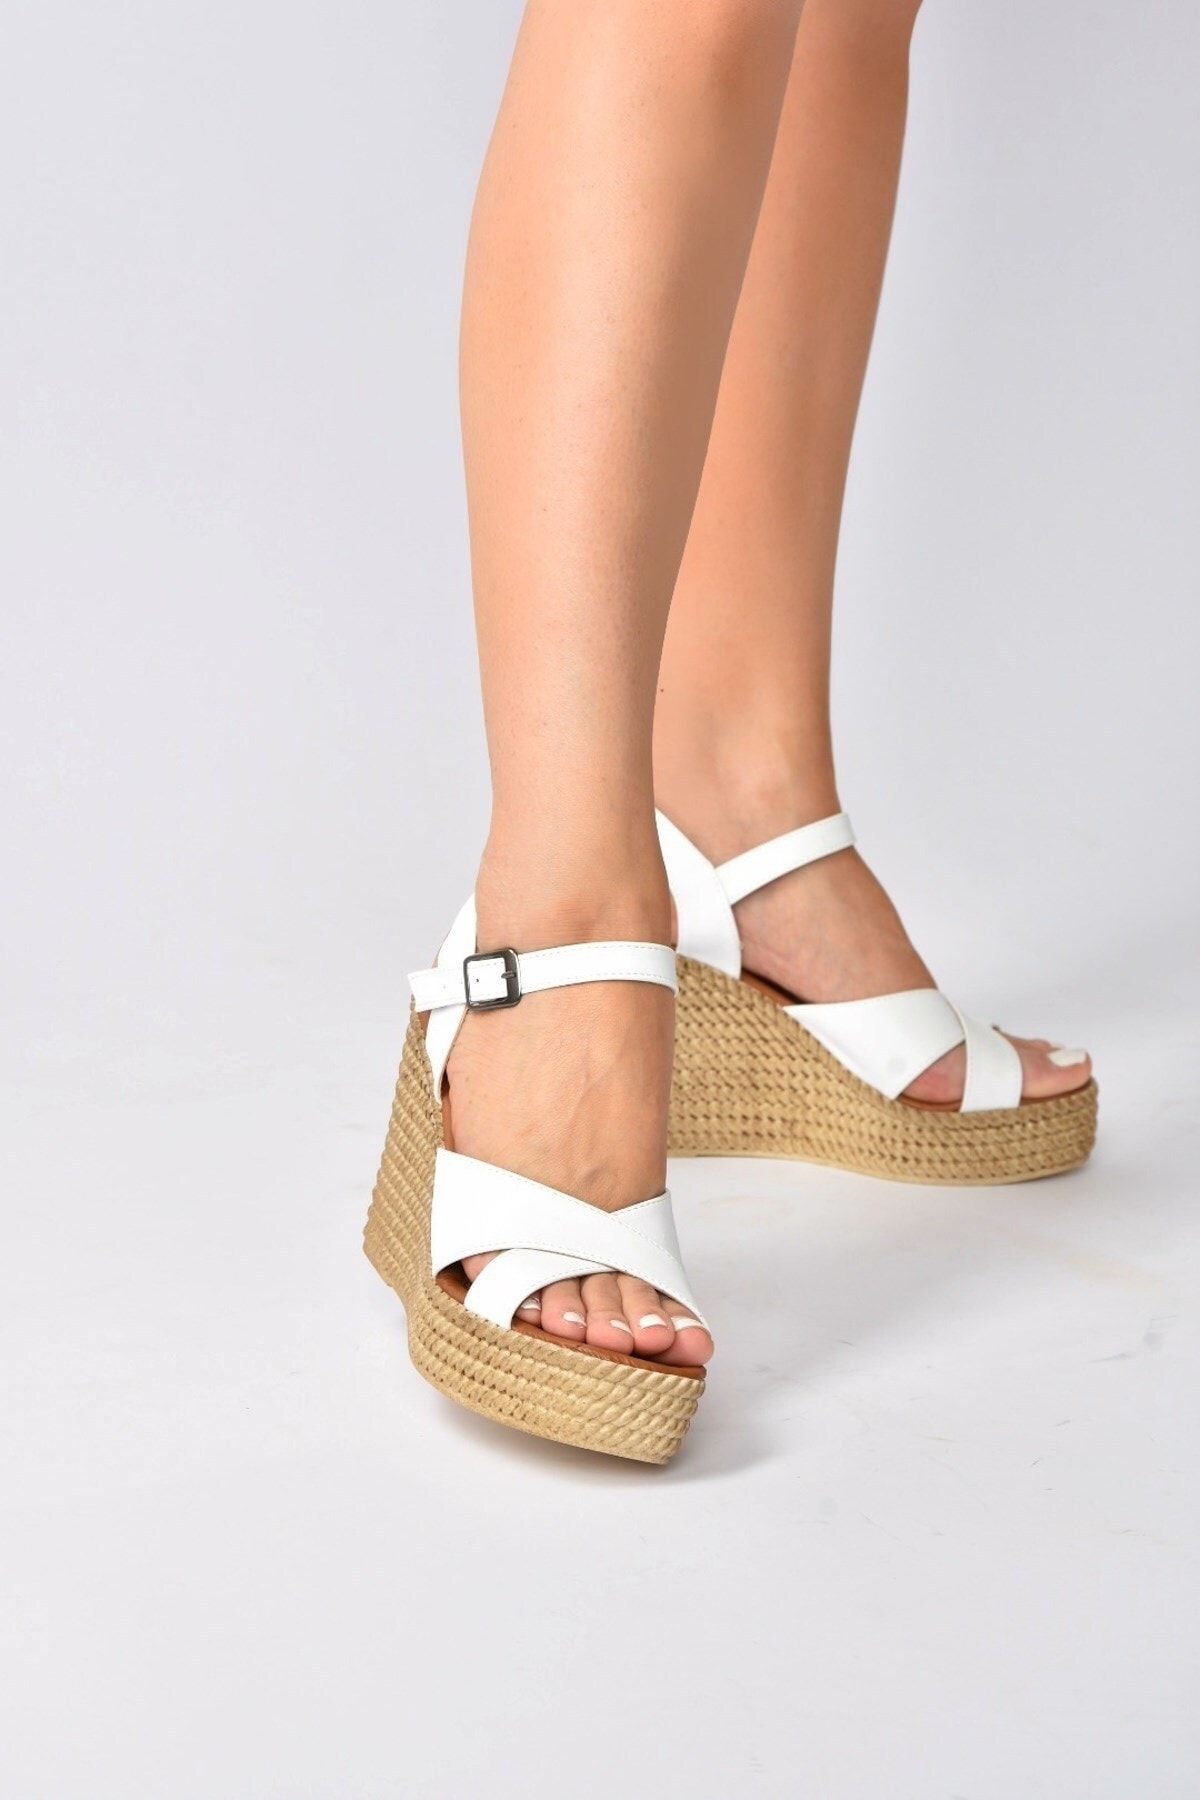 Fox Shoes Kadın Beyaz Dolgu Topuklu Ayakkabı K250053309